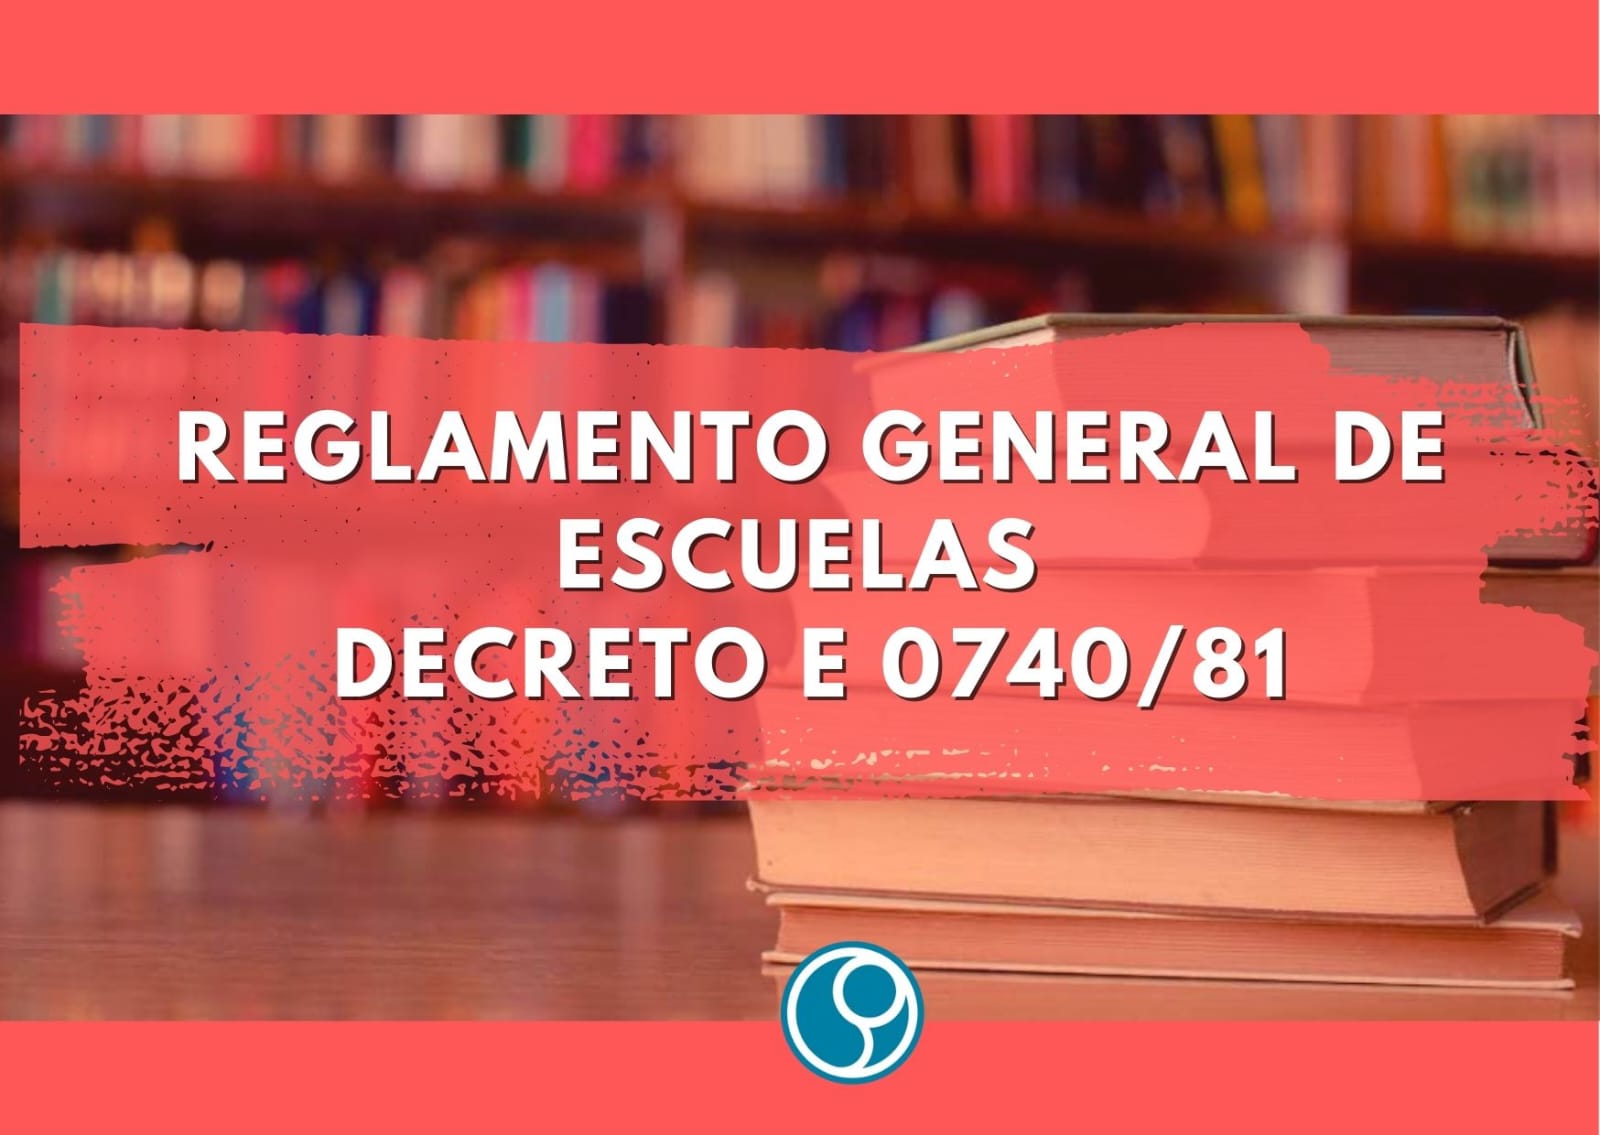 En este momento estás viendo Reglamento General de Escuelas para el ámbito del Consejo General de Educación Decreto E 0740/81.